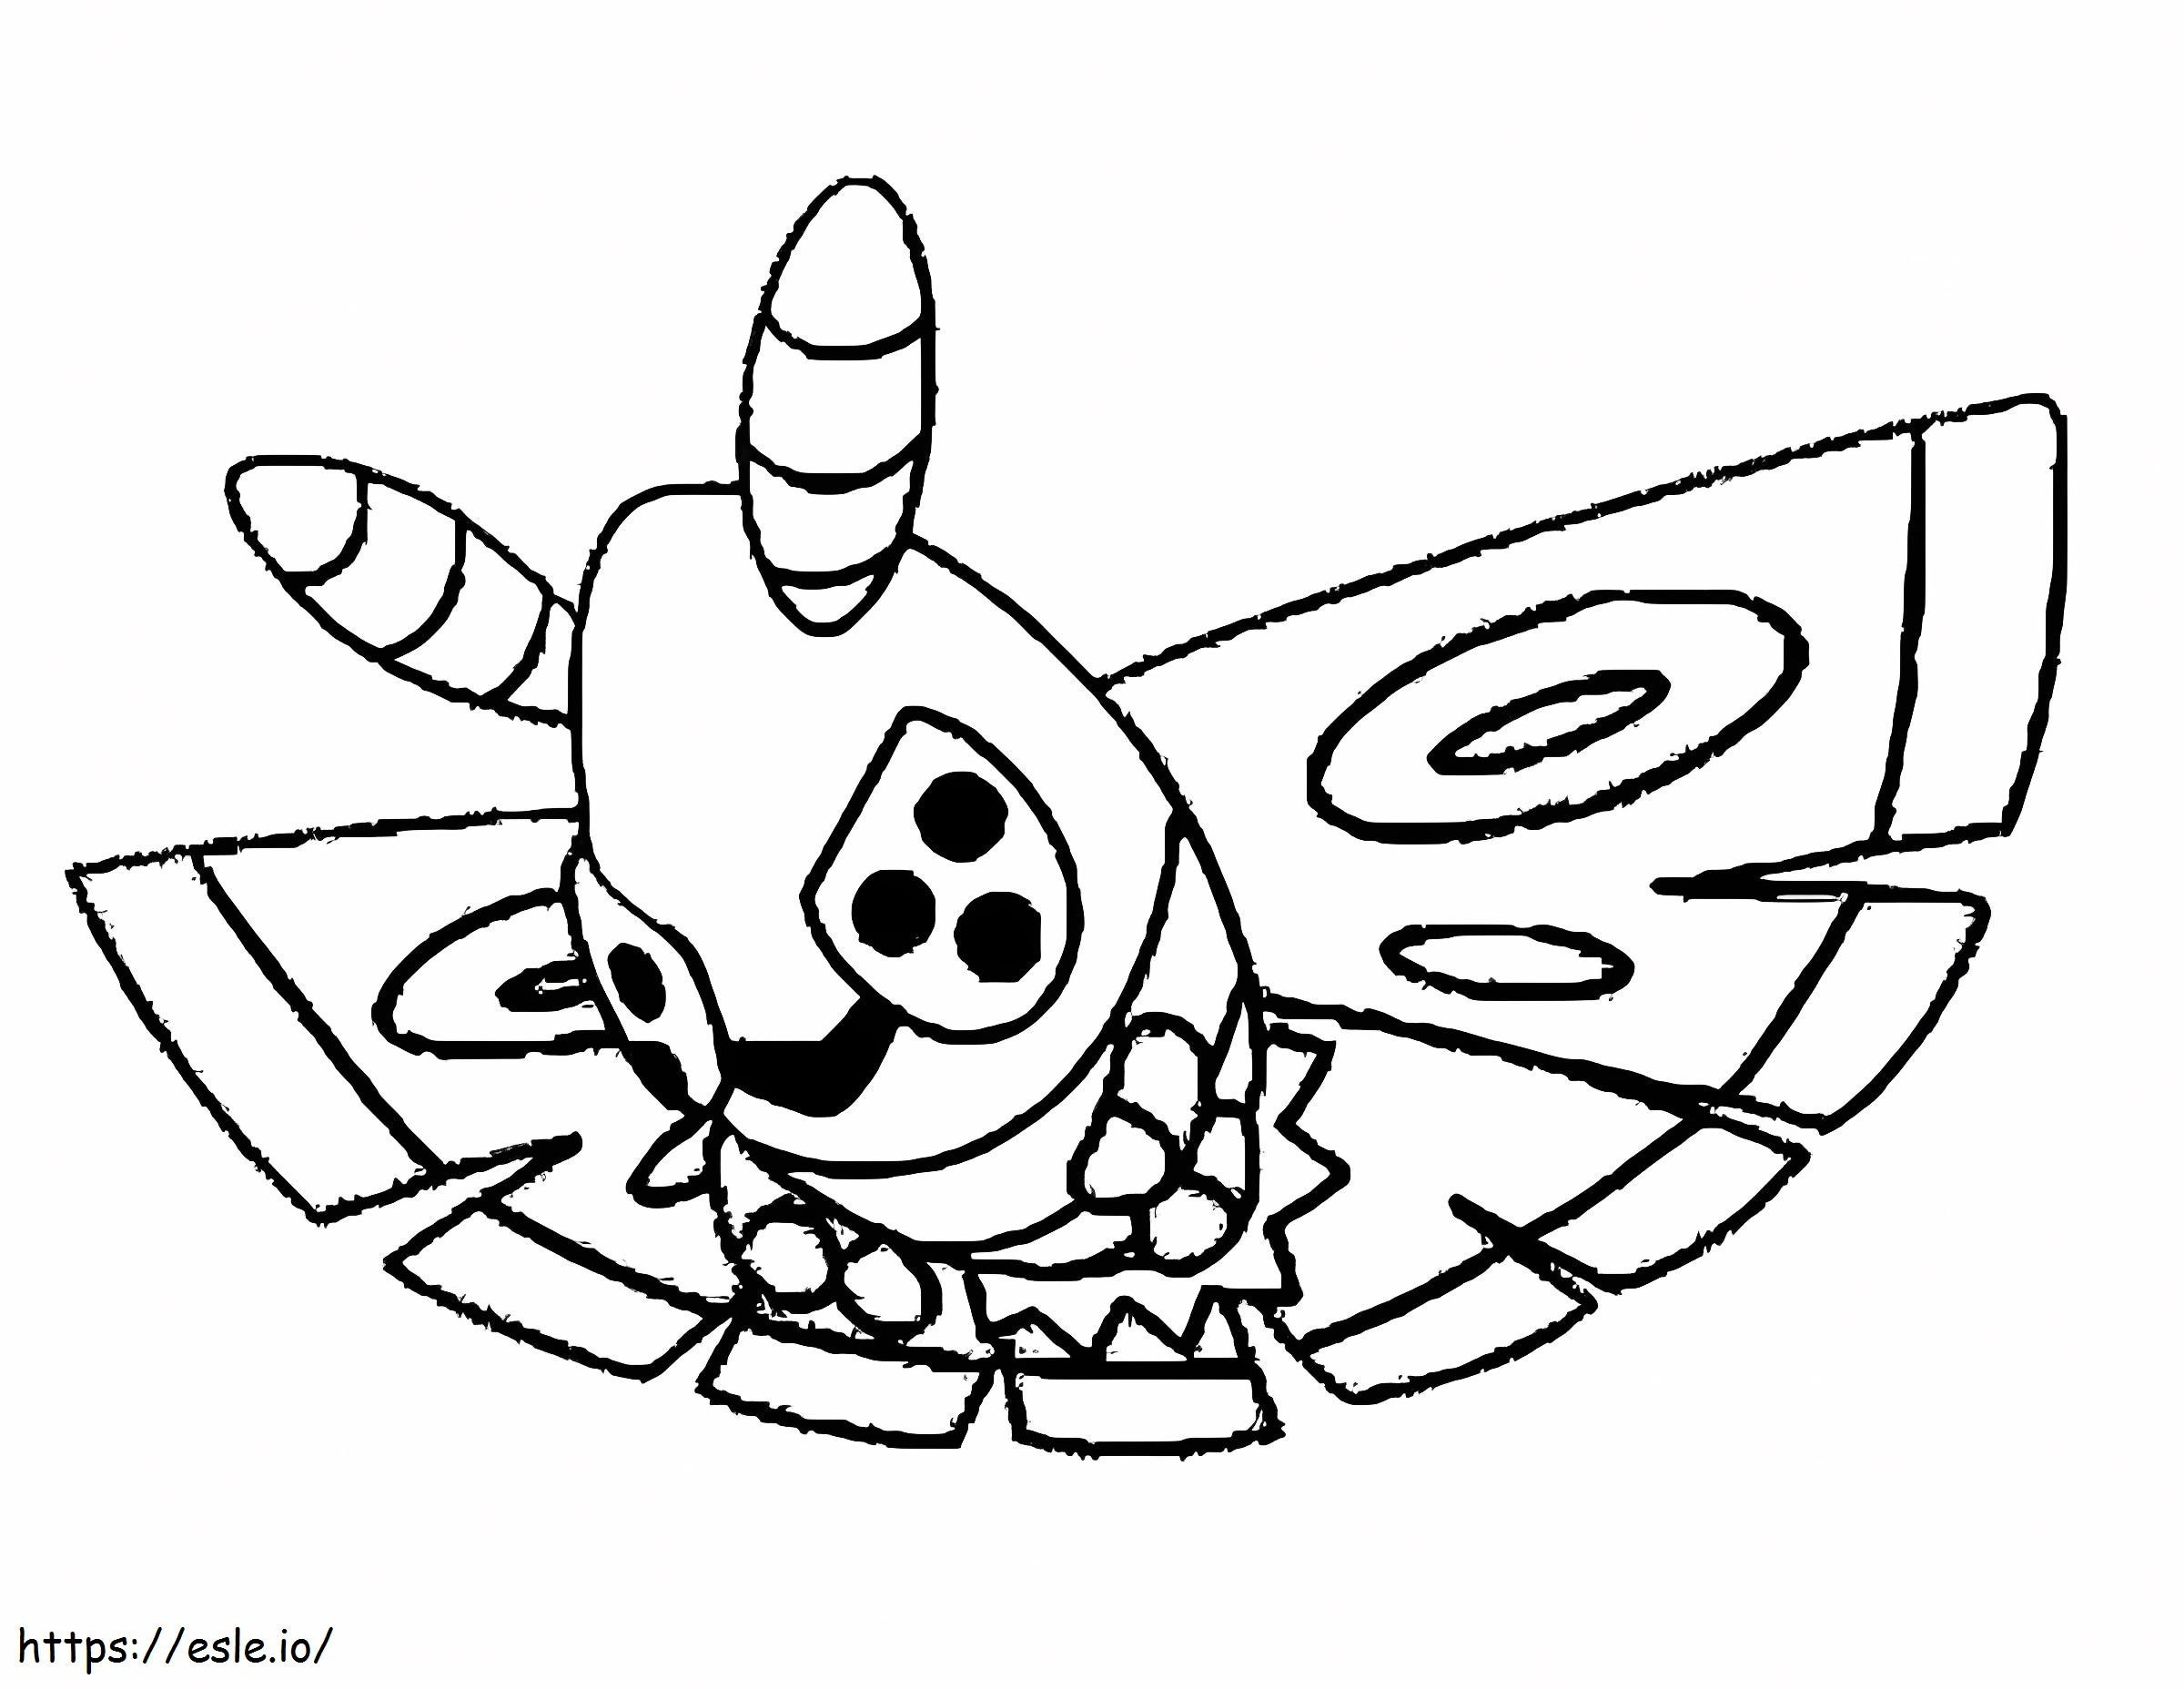 Coloriage Pokémon Dustox Gen 3 à imprimer dessin